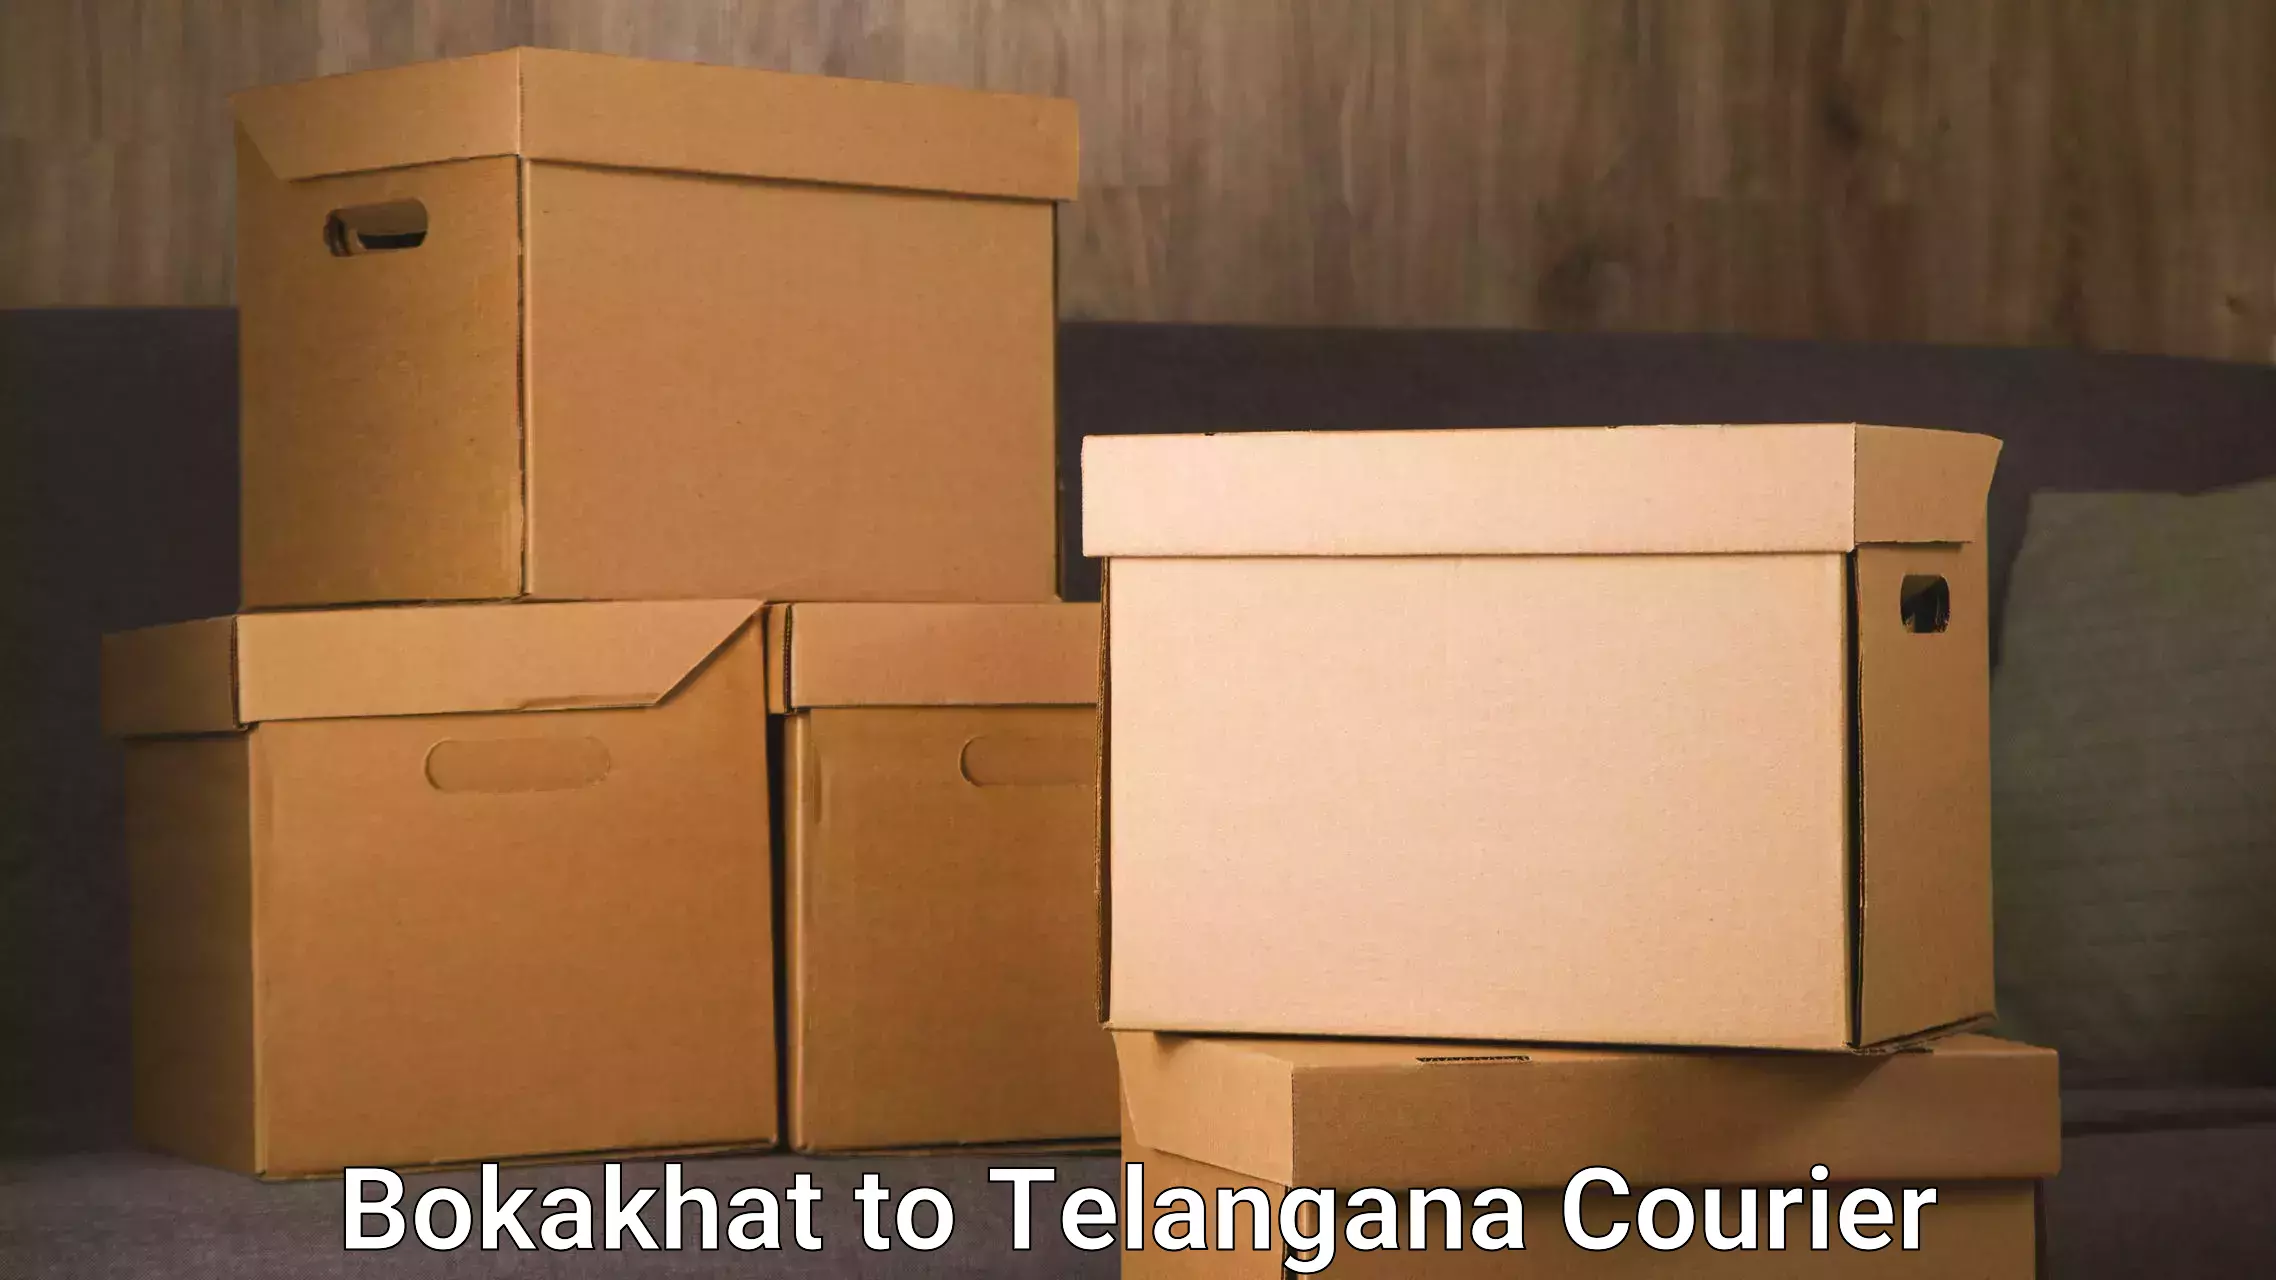 Advanced tracking systems Bokakhat to Telangana